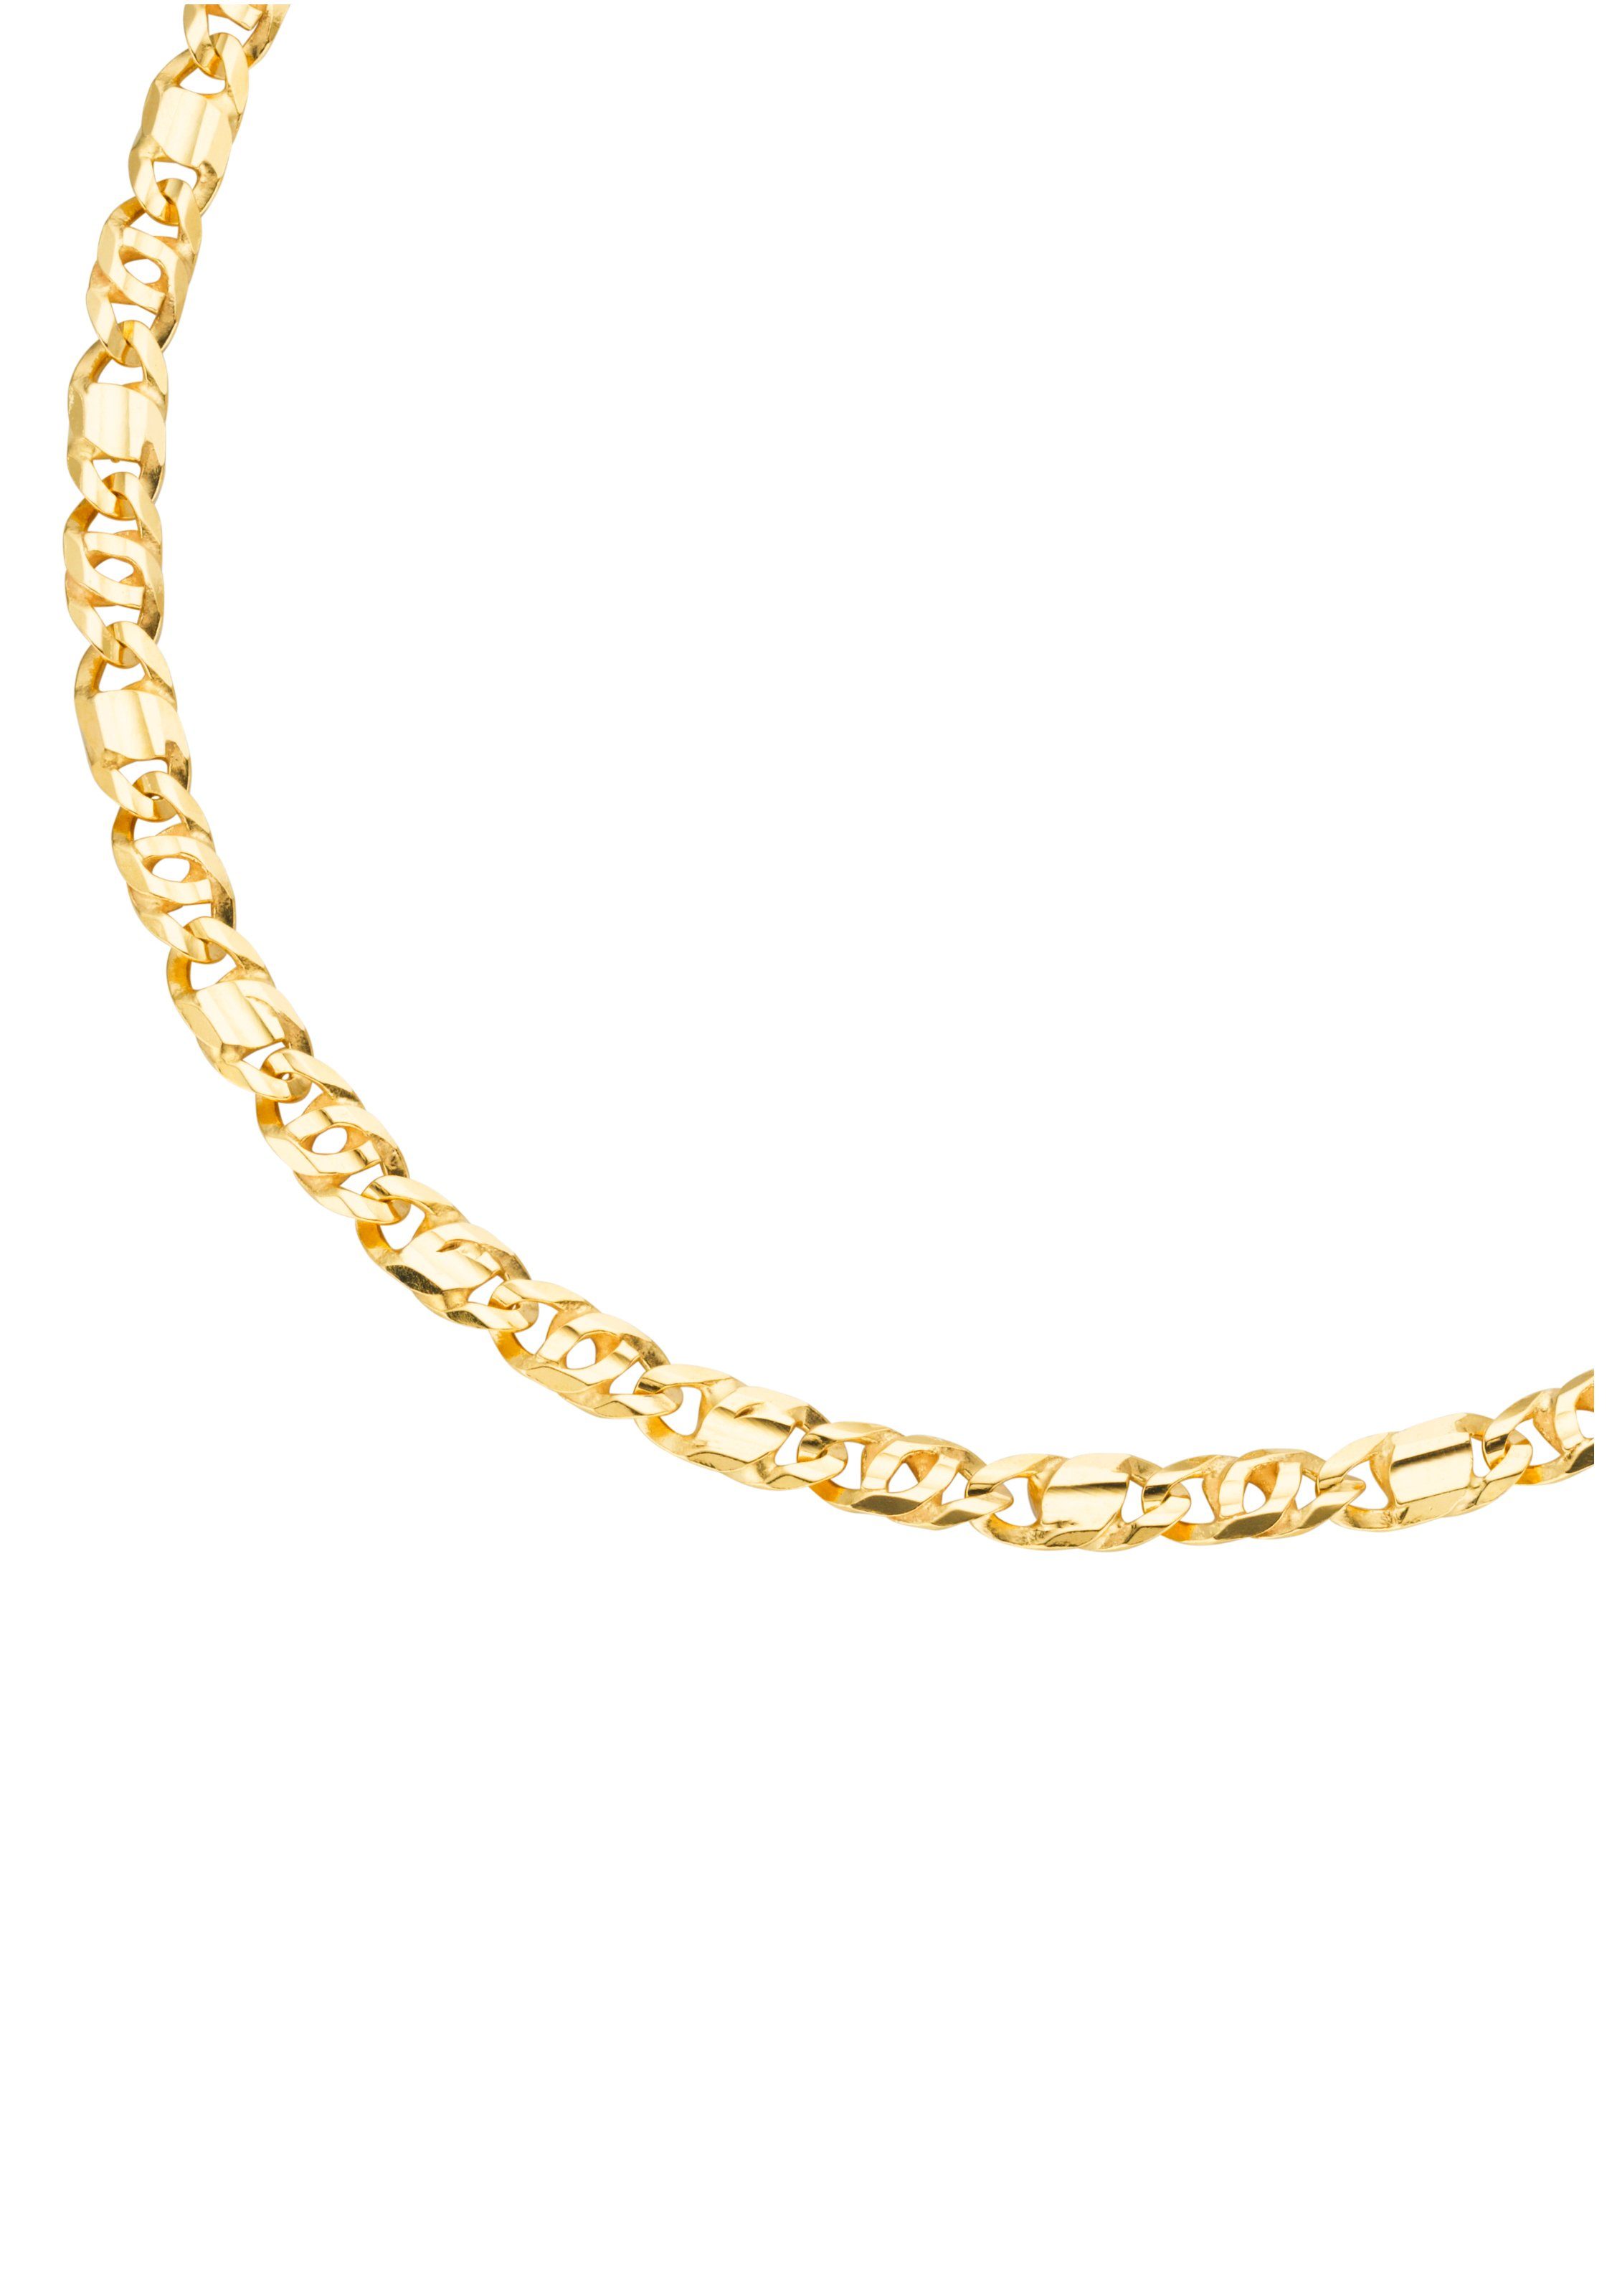 Günstige Goldketten für Damen kaufen » Goldketten SALE | OTTO